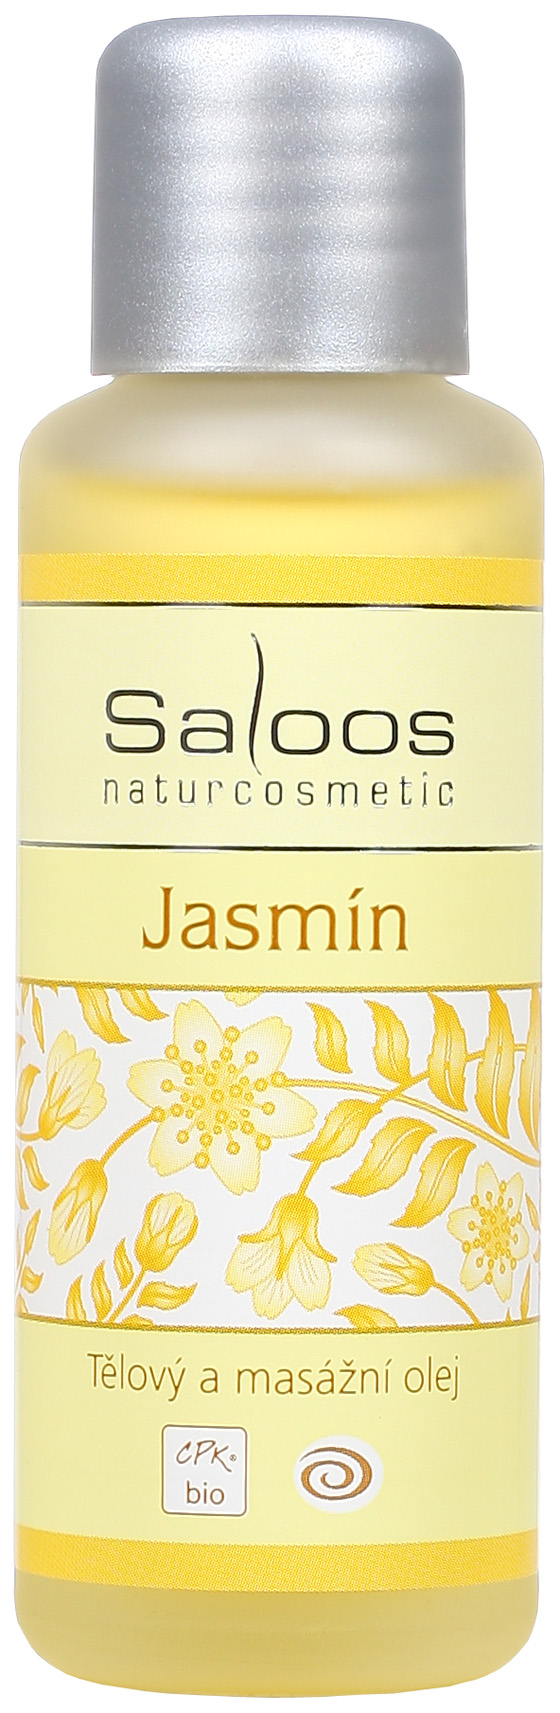 Jasmín - tělový a masážní olej 50